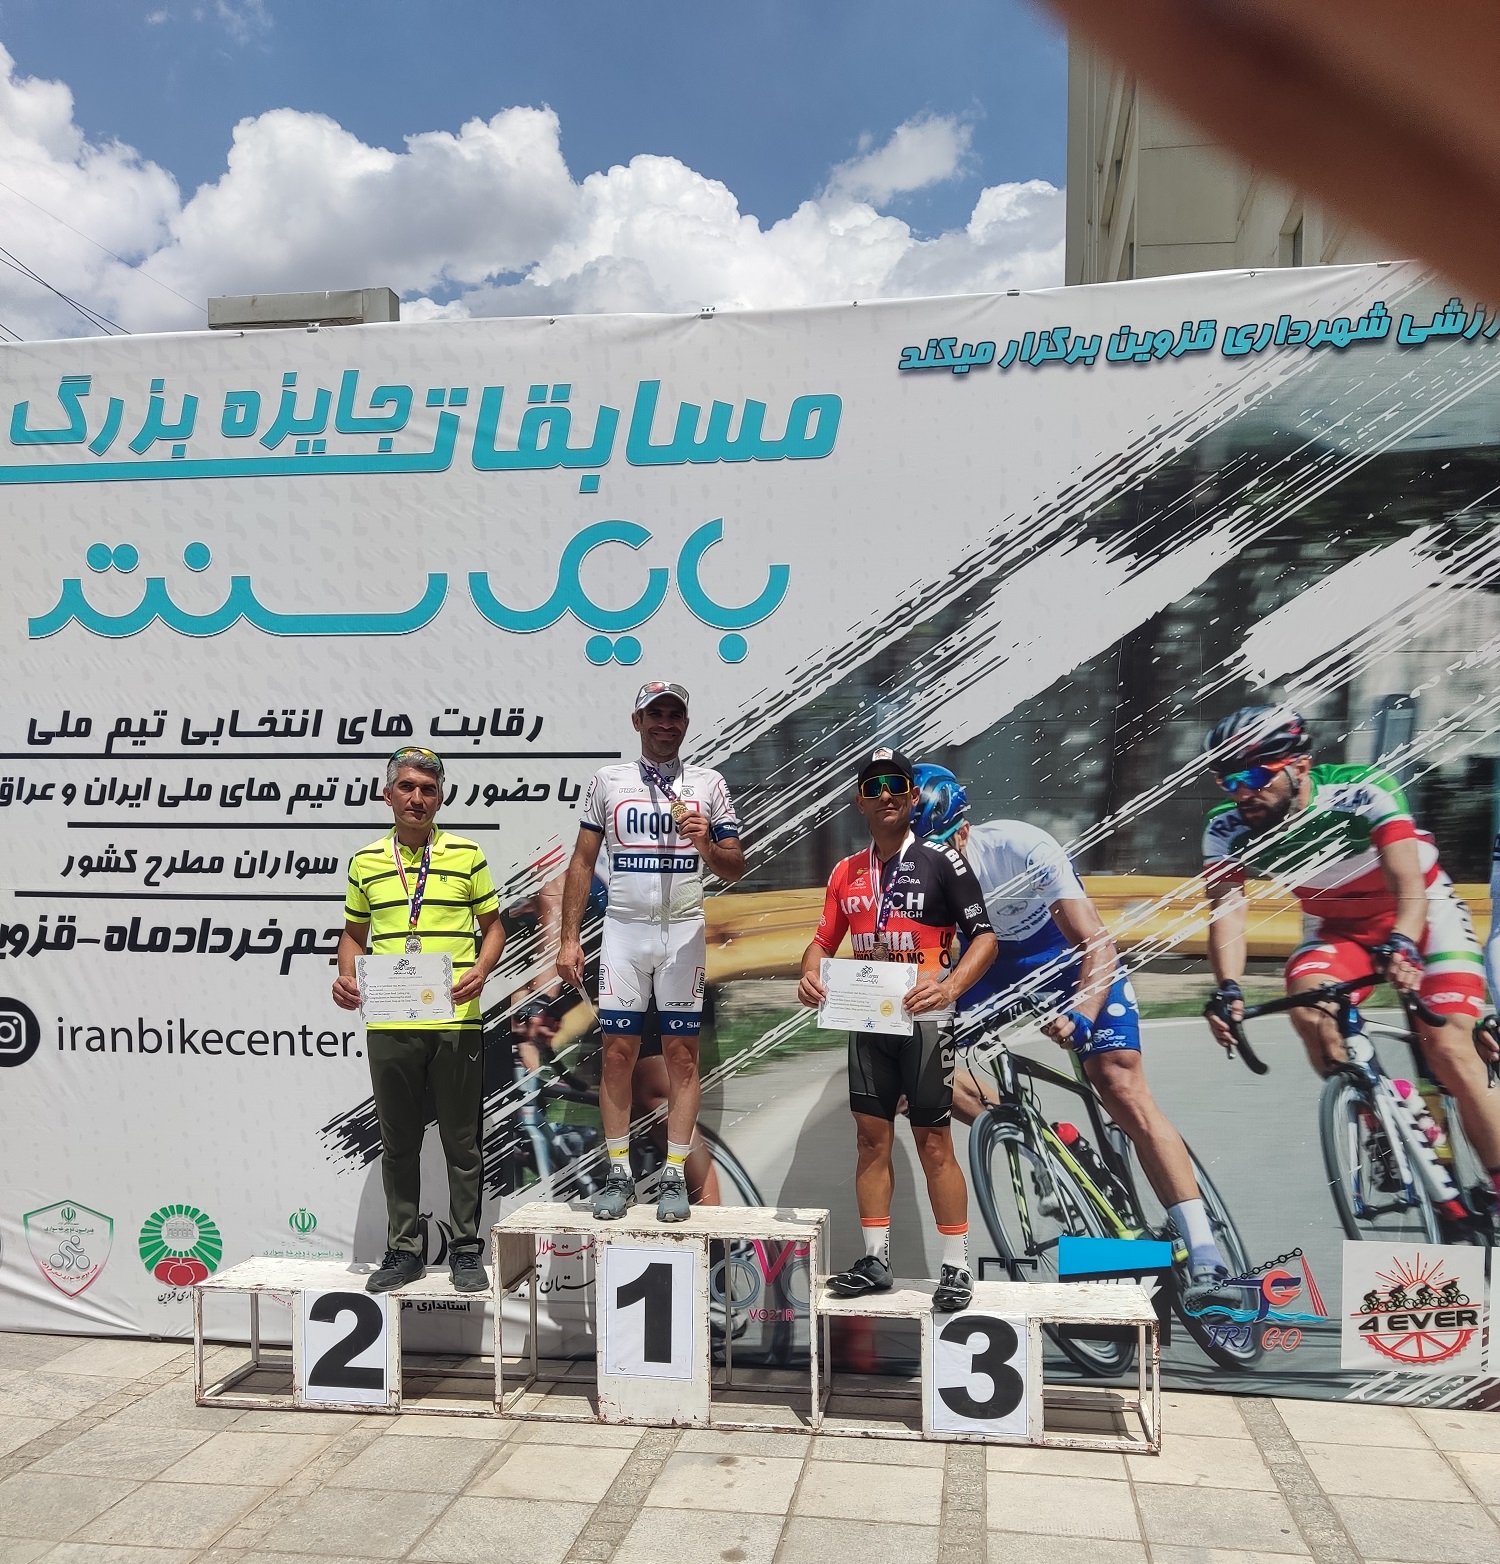 درخشش دوچرخه سوار کیش در مسابقات جایزه بزرگ قزوین و انتخابی تیم ملی